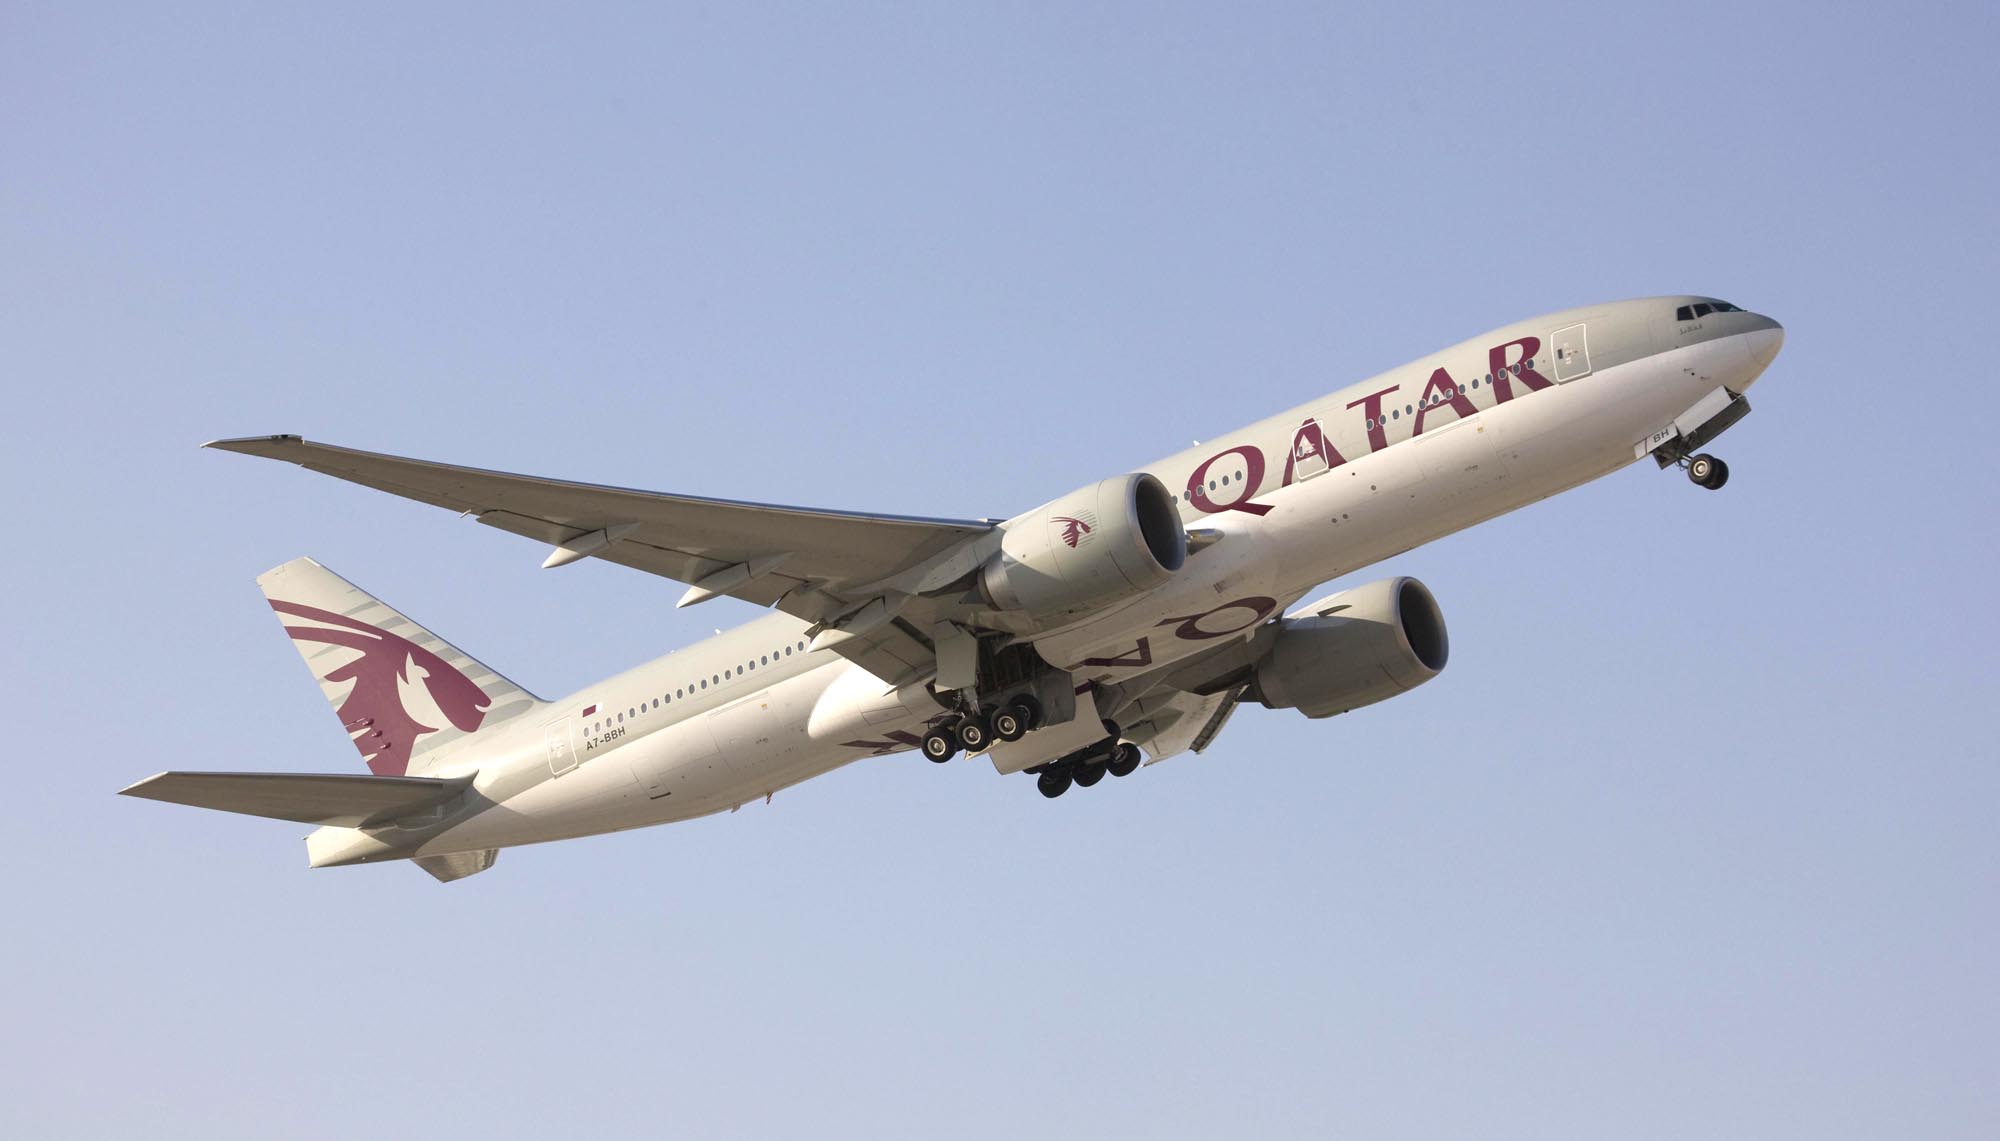 A Qatar vagy négyszáz kilométerrel hosszabban repülne Aucklandig, mint a vetélytársa